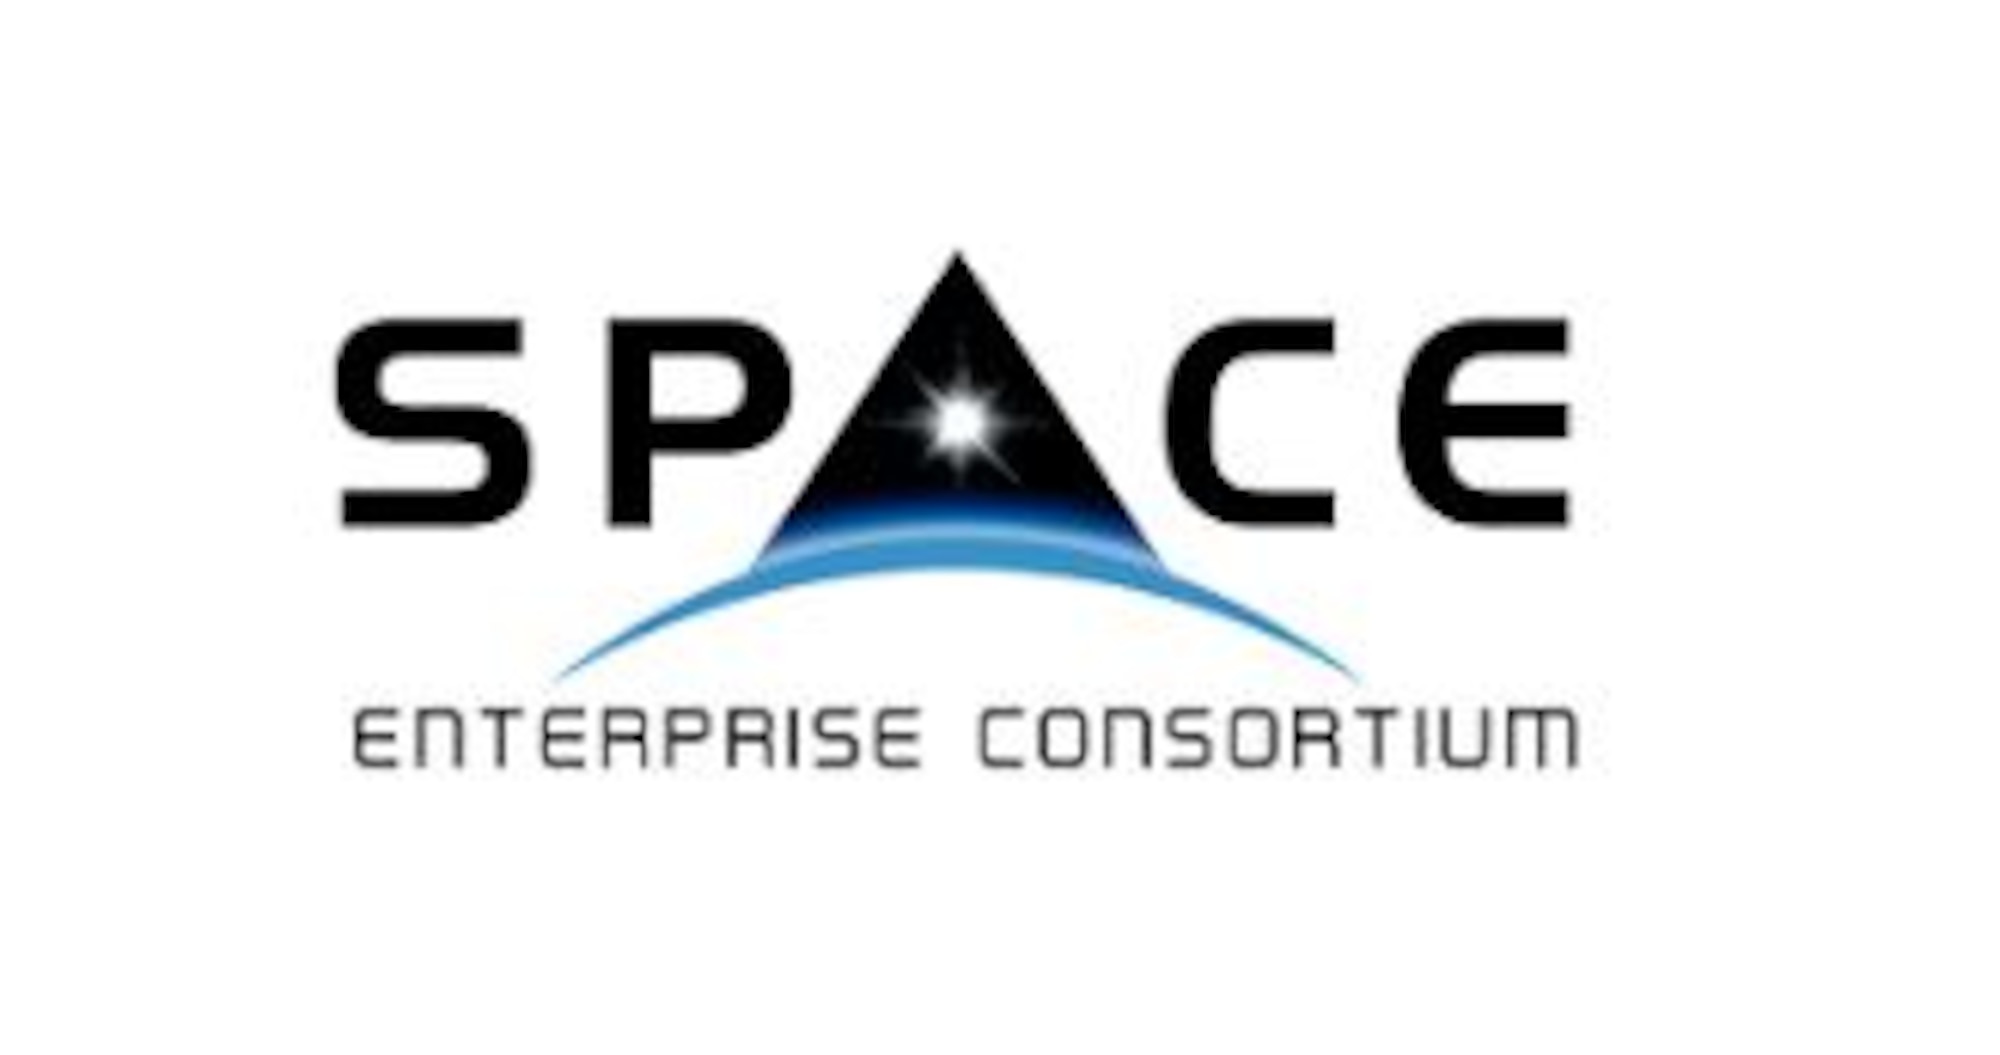 SpEC Consortium Logo Courtesy of SpEC website